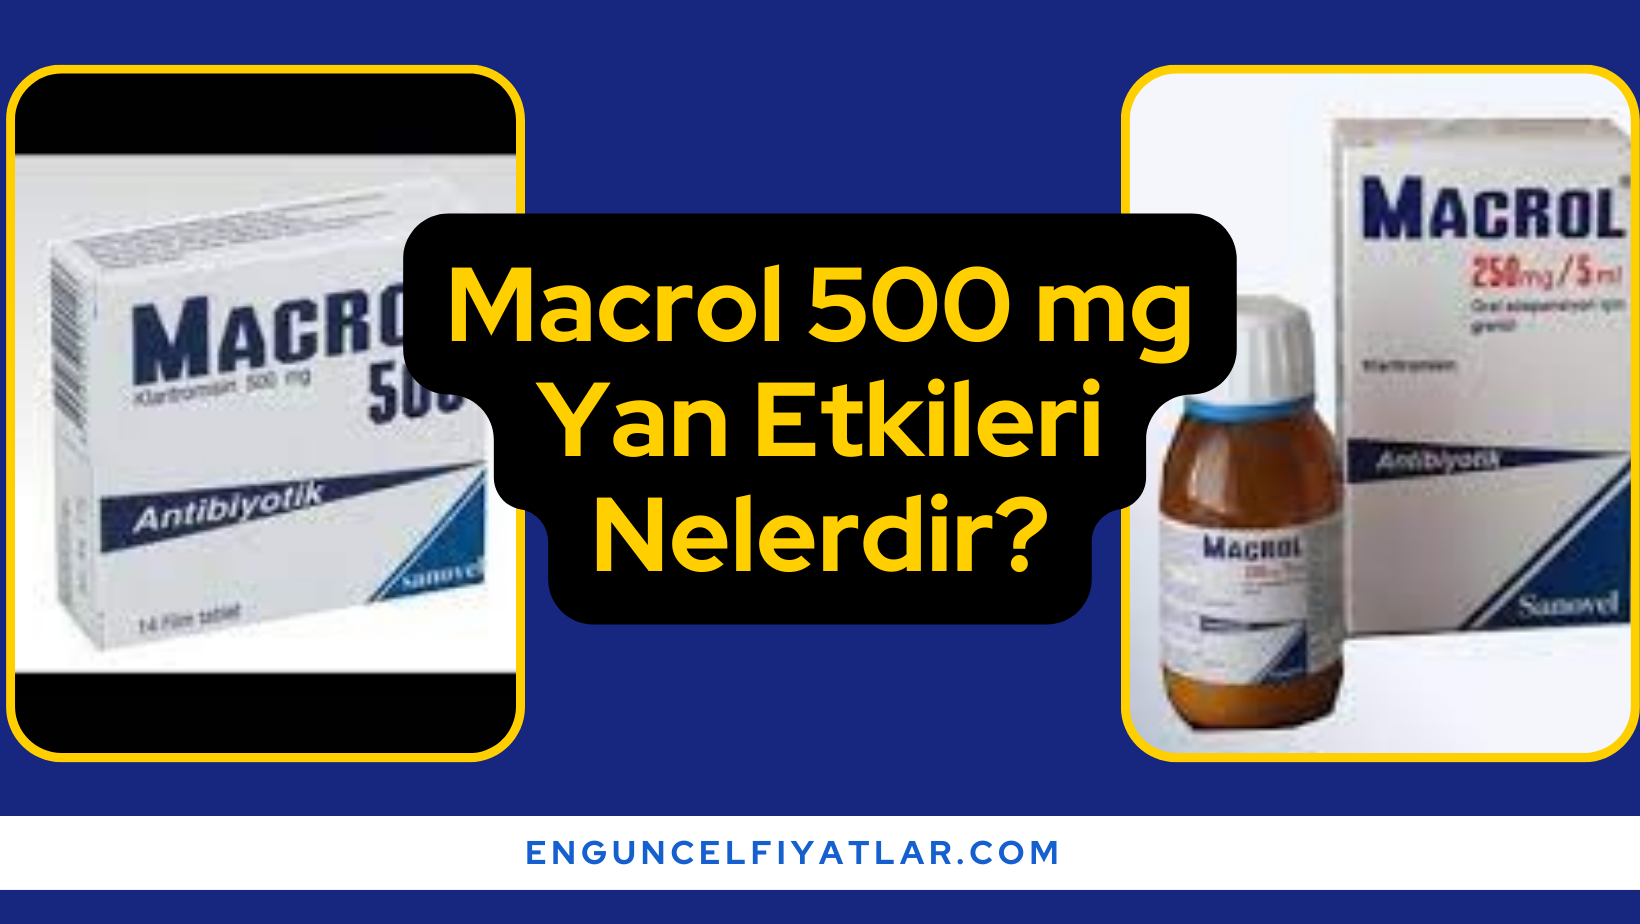 Macrol 500 mg Yan Etkileri Nelerdir